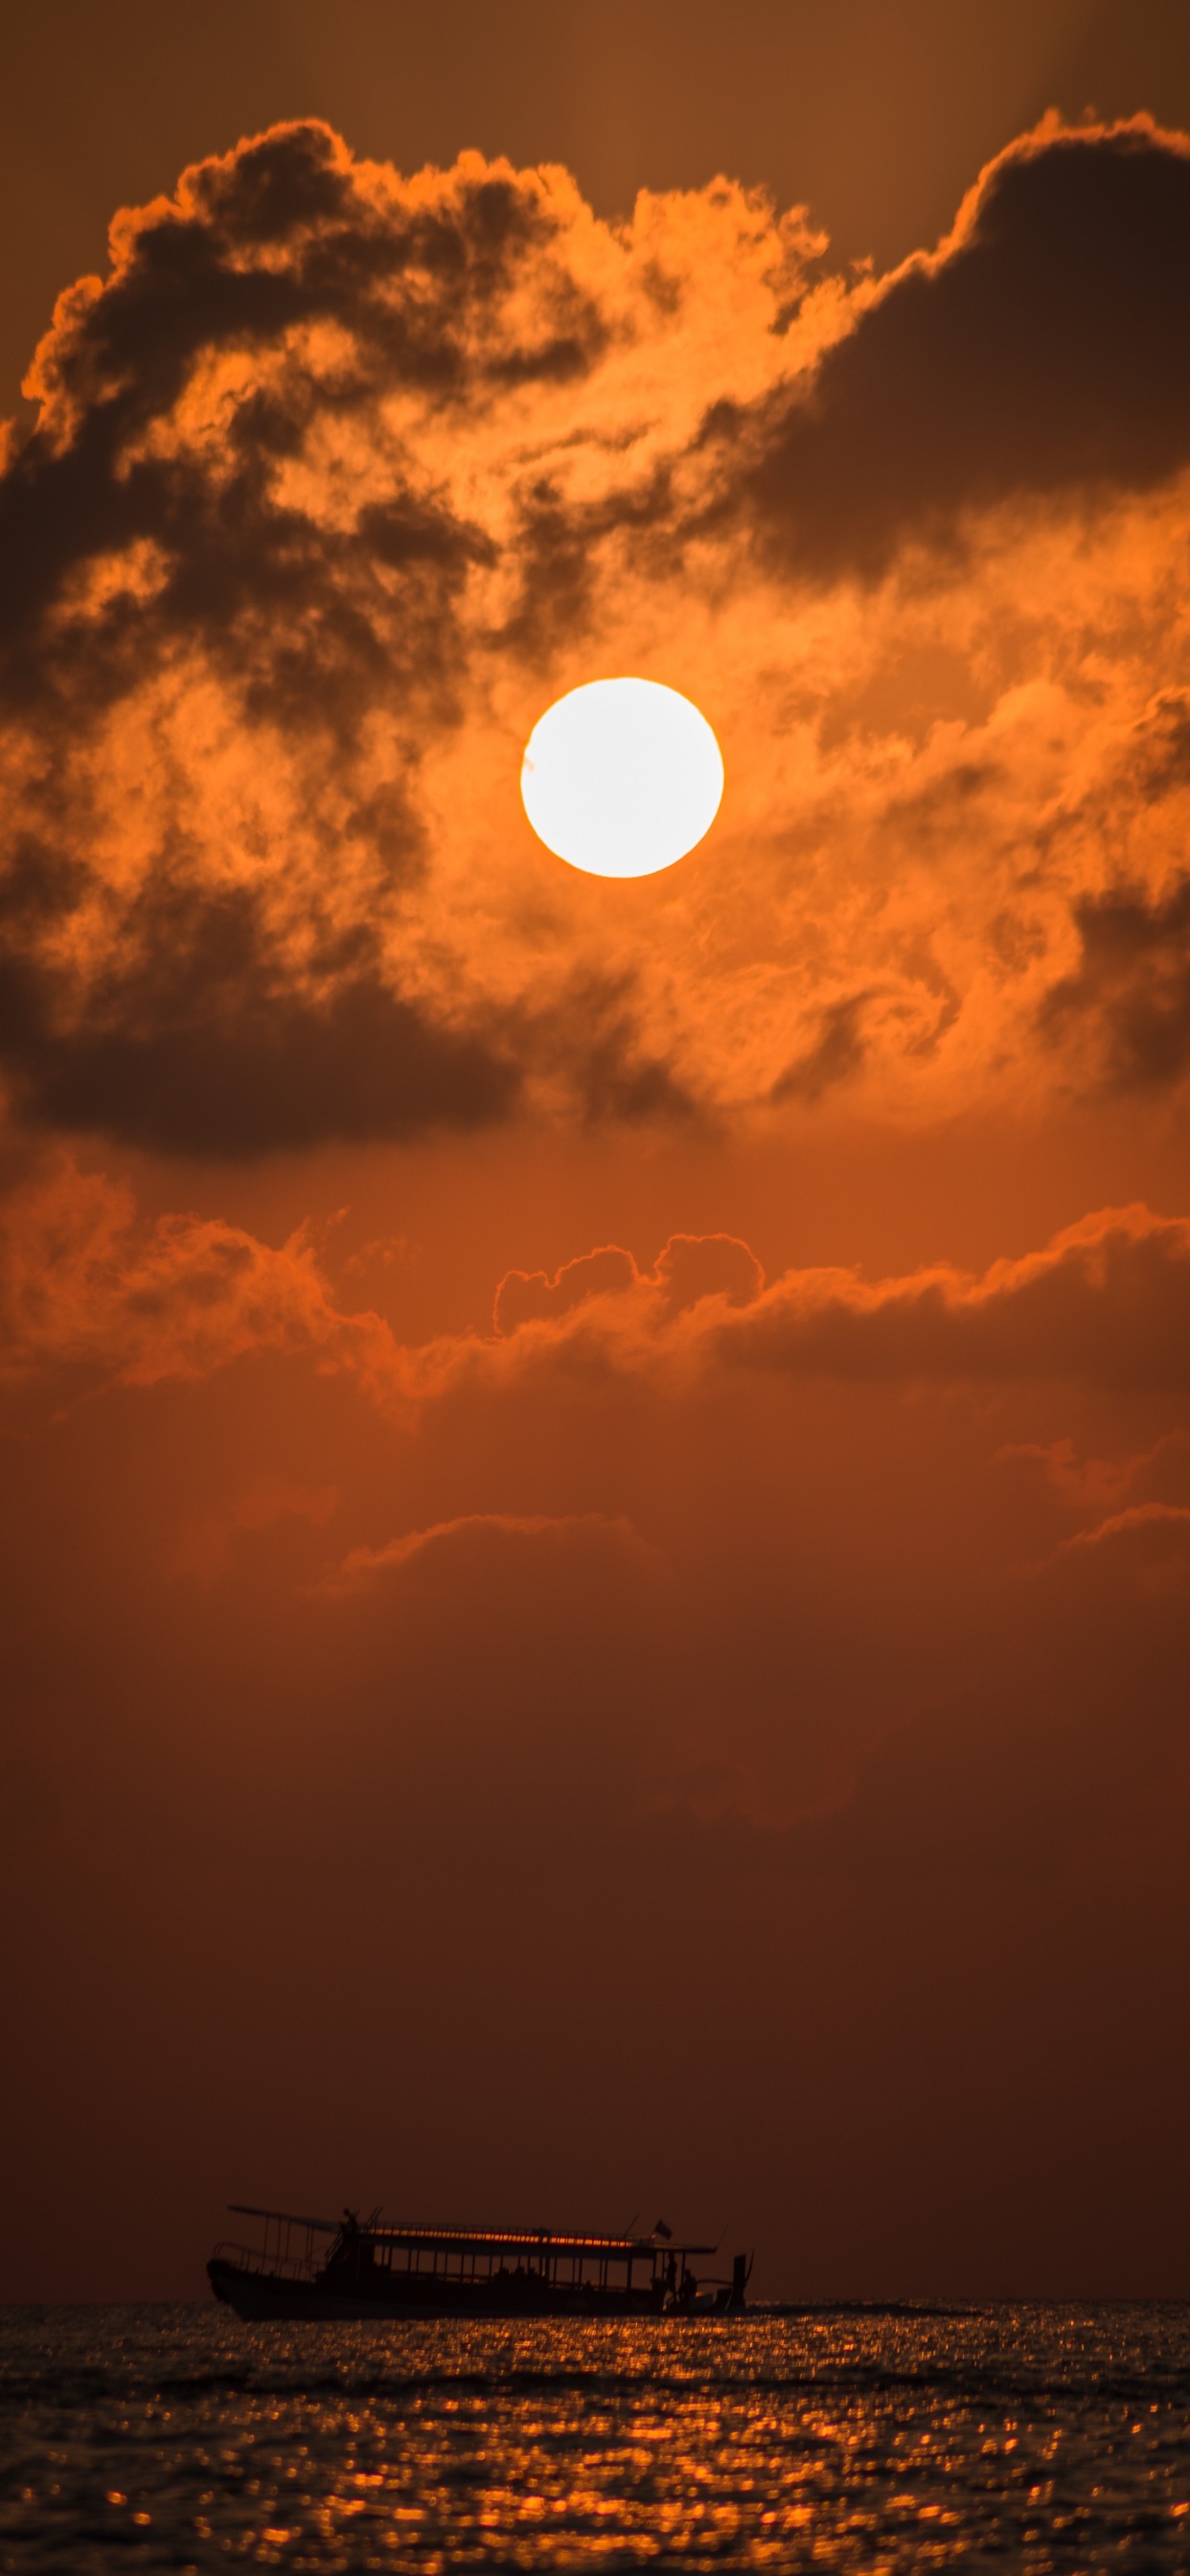 Sonnenuntergang, Afterglow, Sonne, Cloud, Orange. Wallpaper in 1242x2688 Resolution